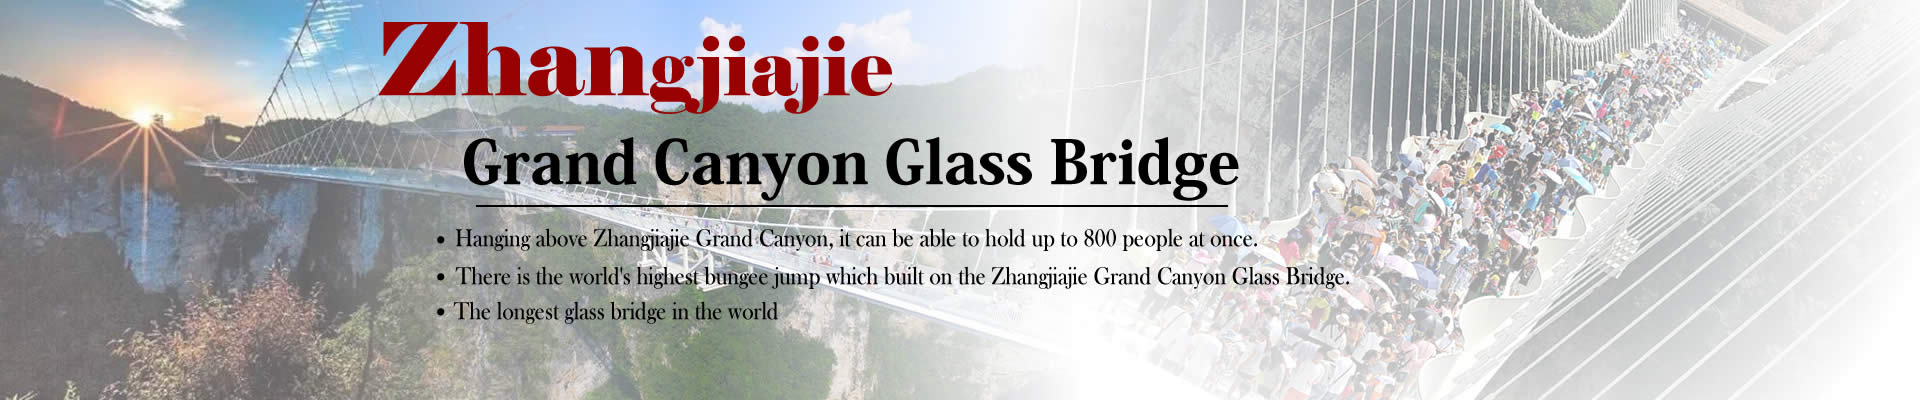 Grand Canyon Glass Bridge